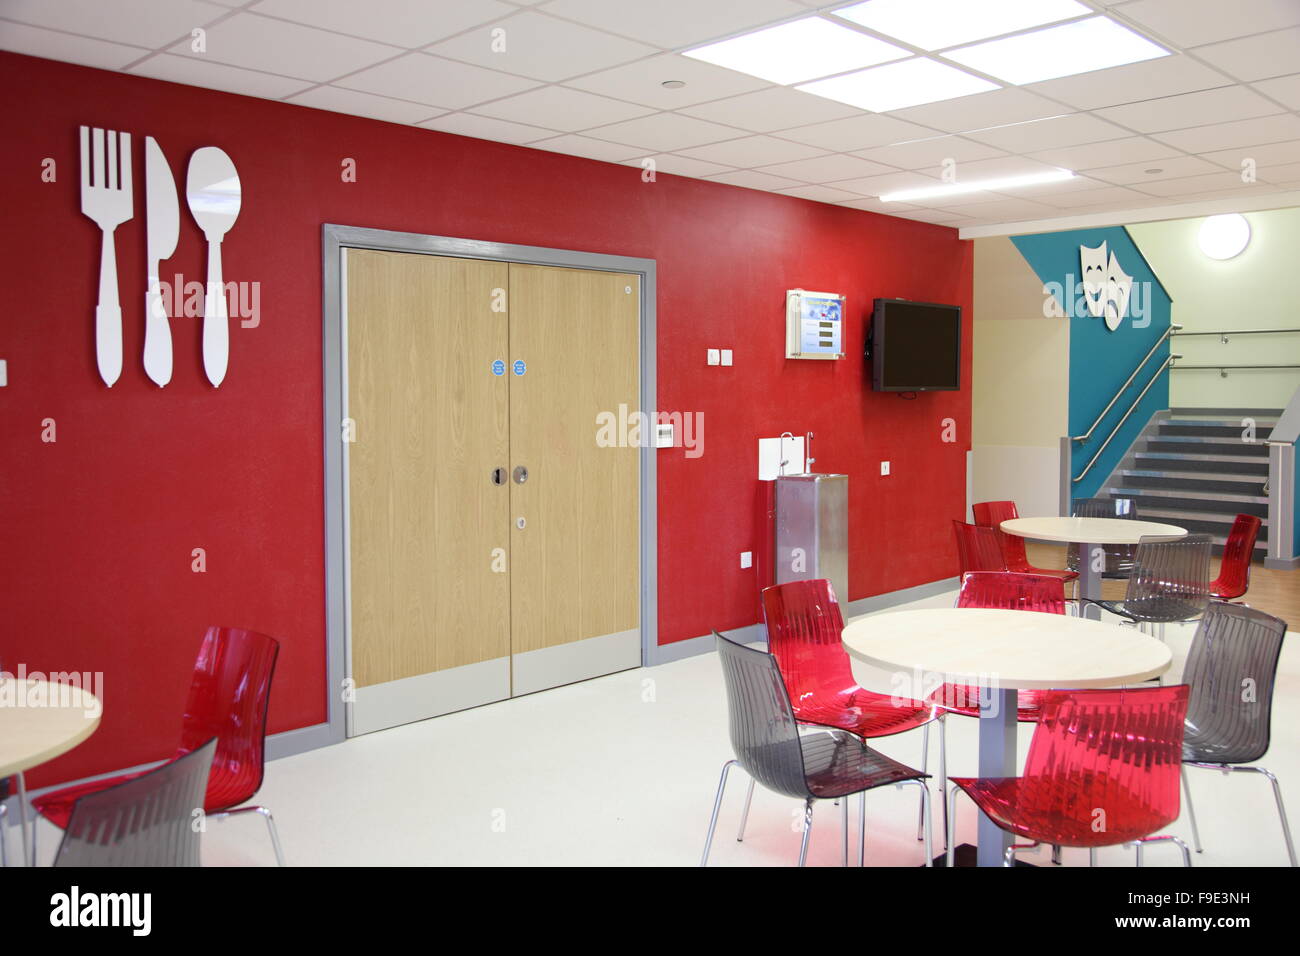 Restaurant-Bereich in einer neuen Akademie-Schule, die mit einem roten und grauen Farbschema mit großen Messer und Gabel Symbole an der Wand montiert Stockfoto